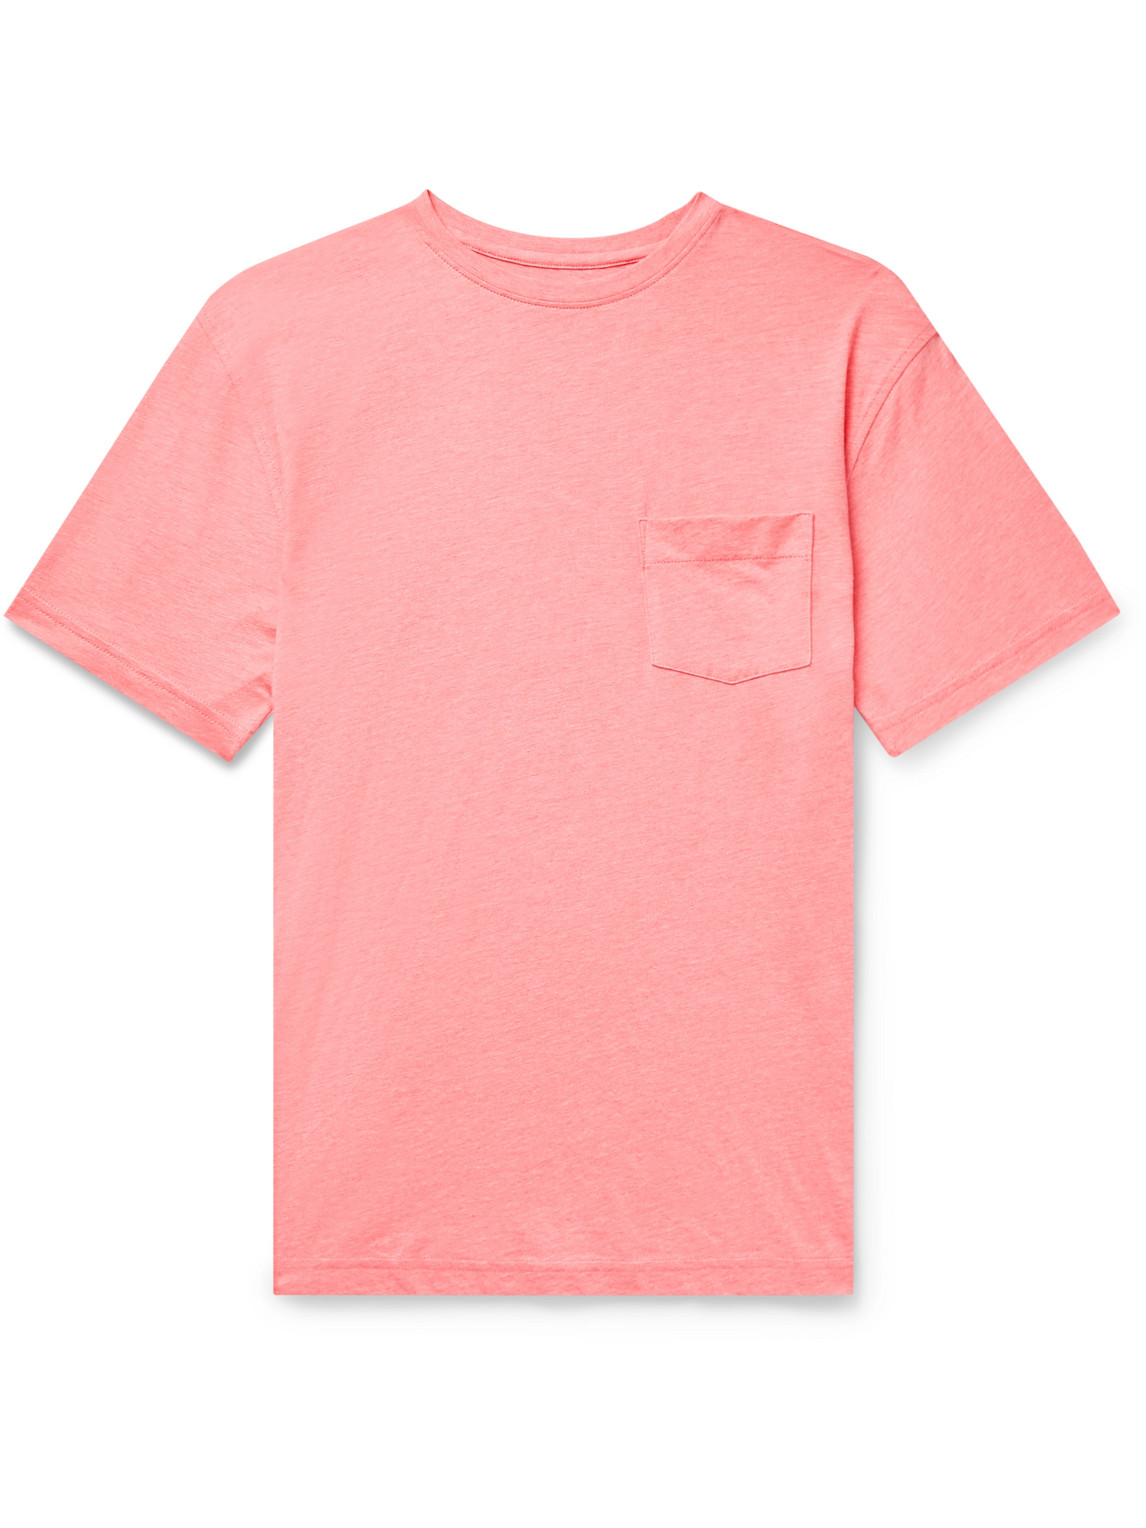 Peter Millar Seaside Summer Pima Cotton and Modal-Blend Jersey T-Shirt